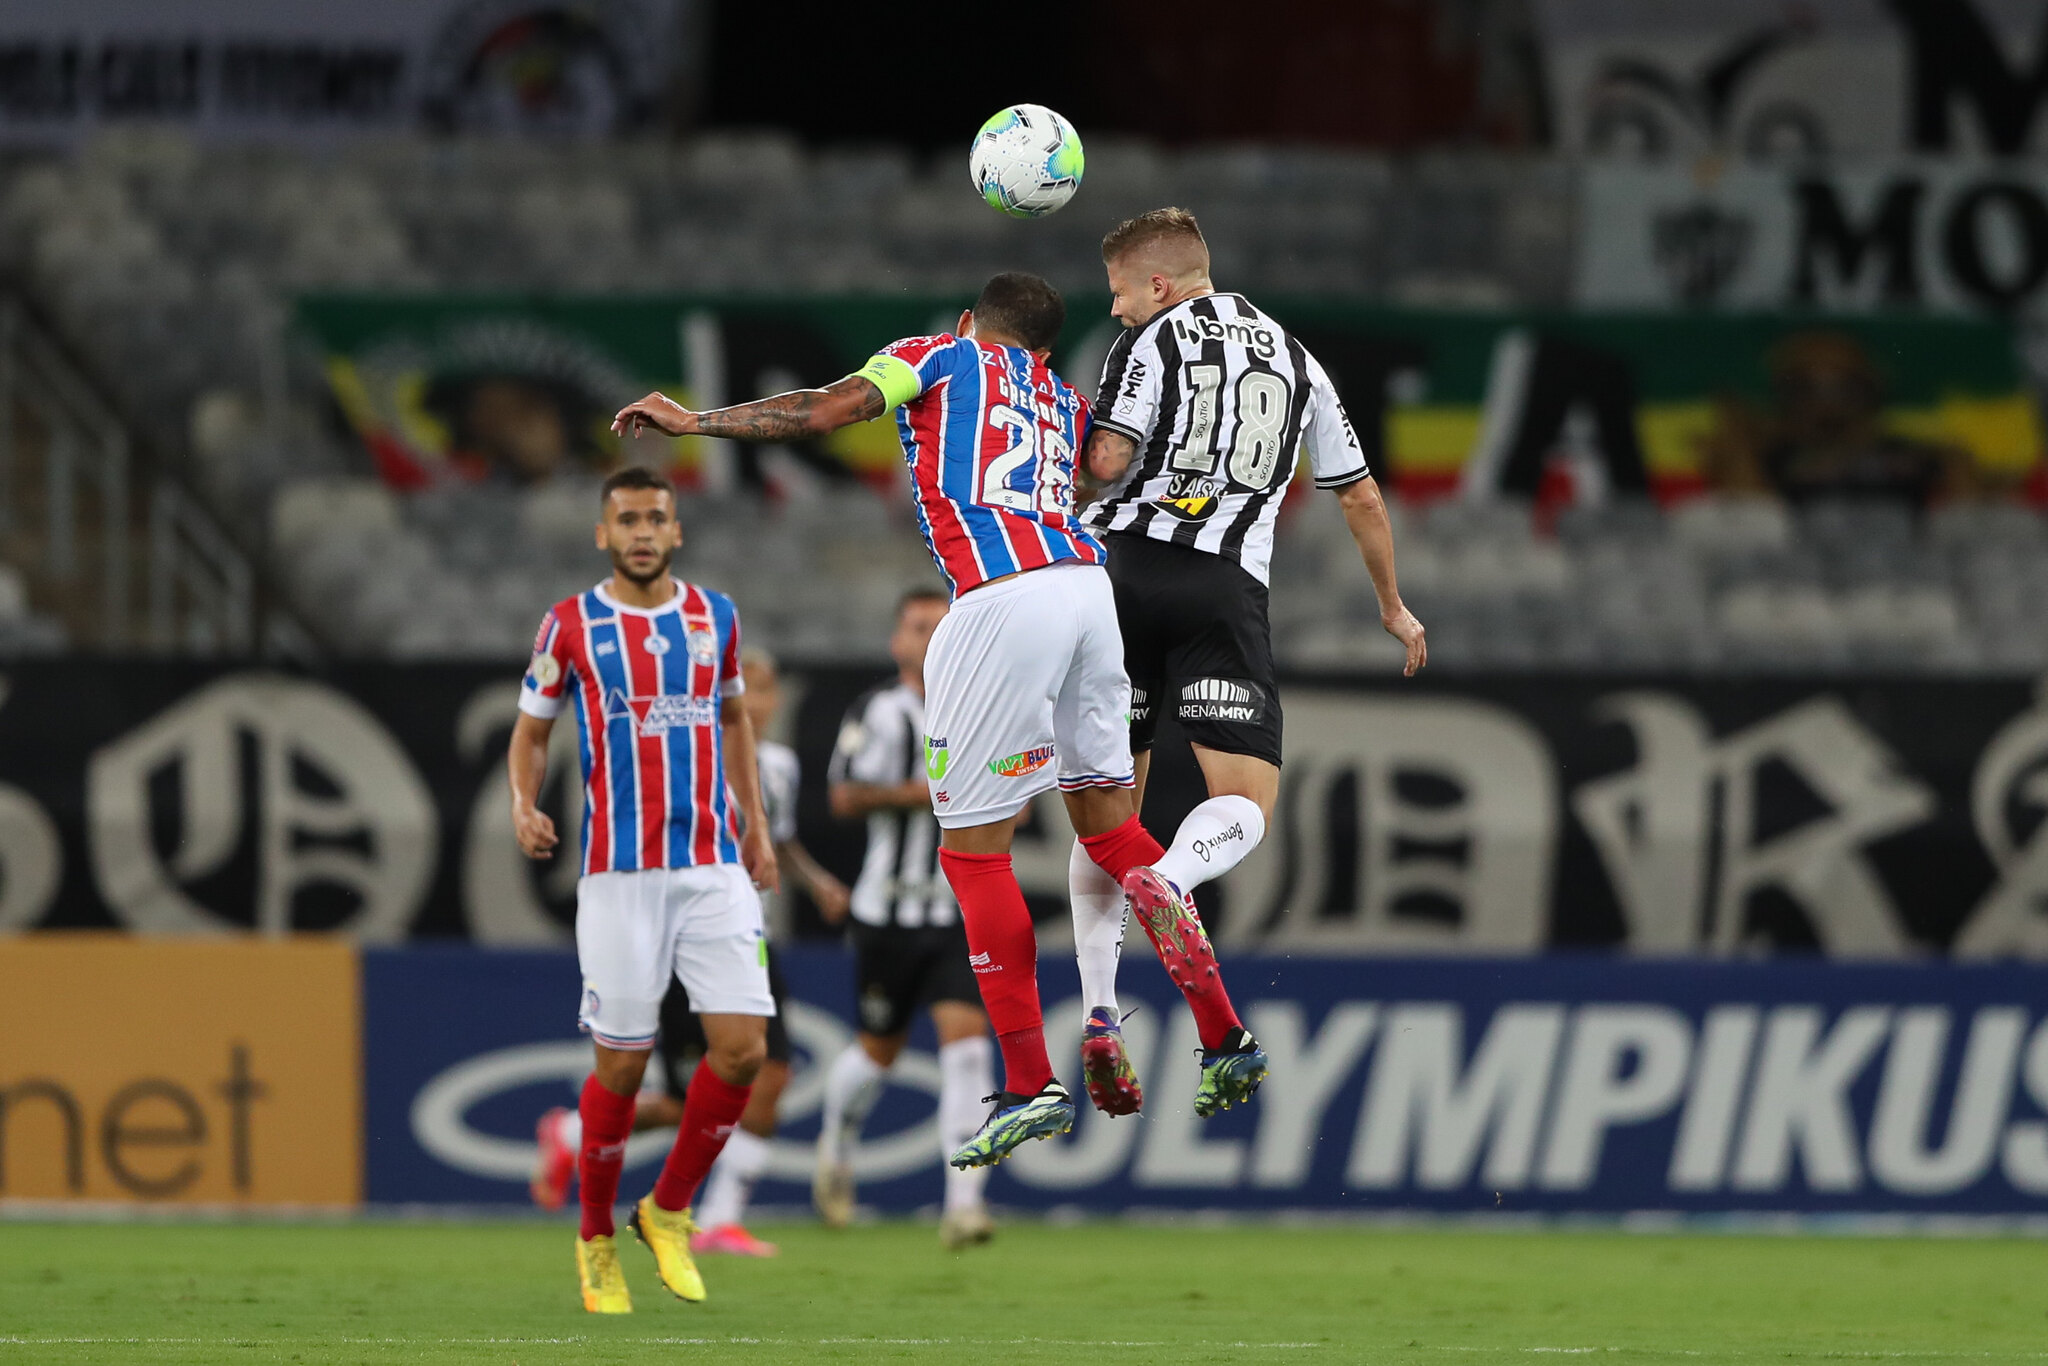 Nos últimos cinco jogos contra o Bahia, o Atlético-MG venceu apenas um